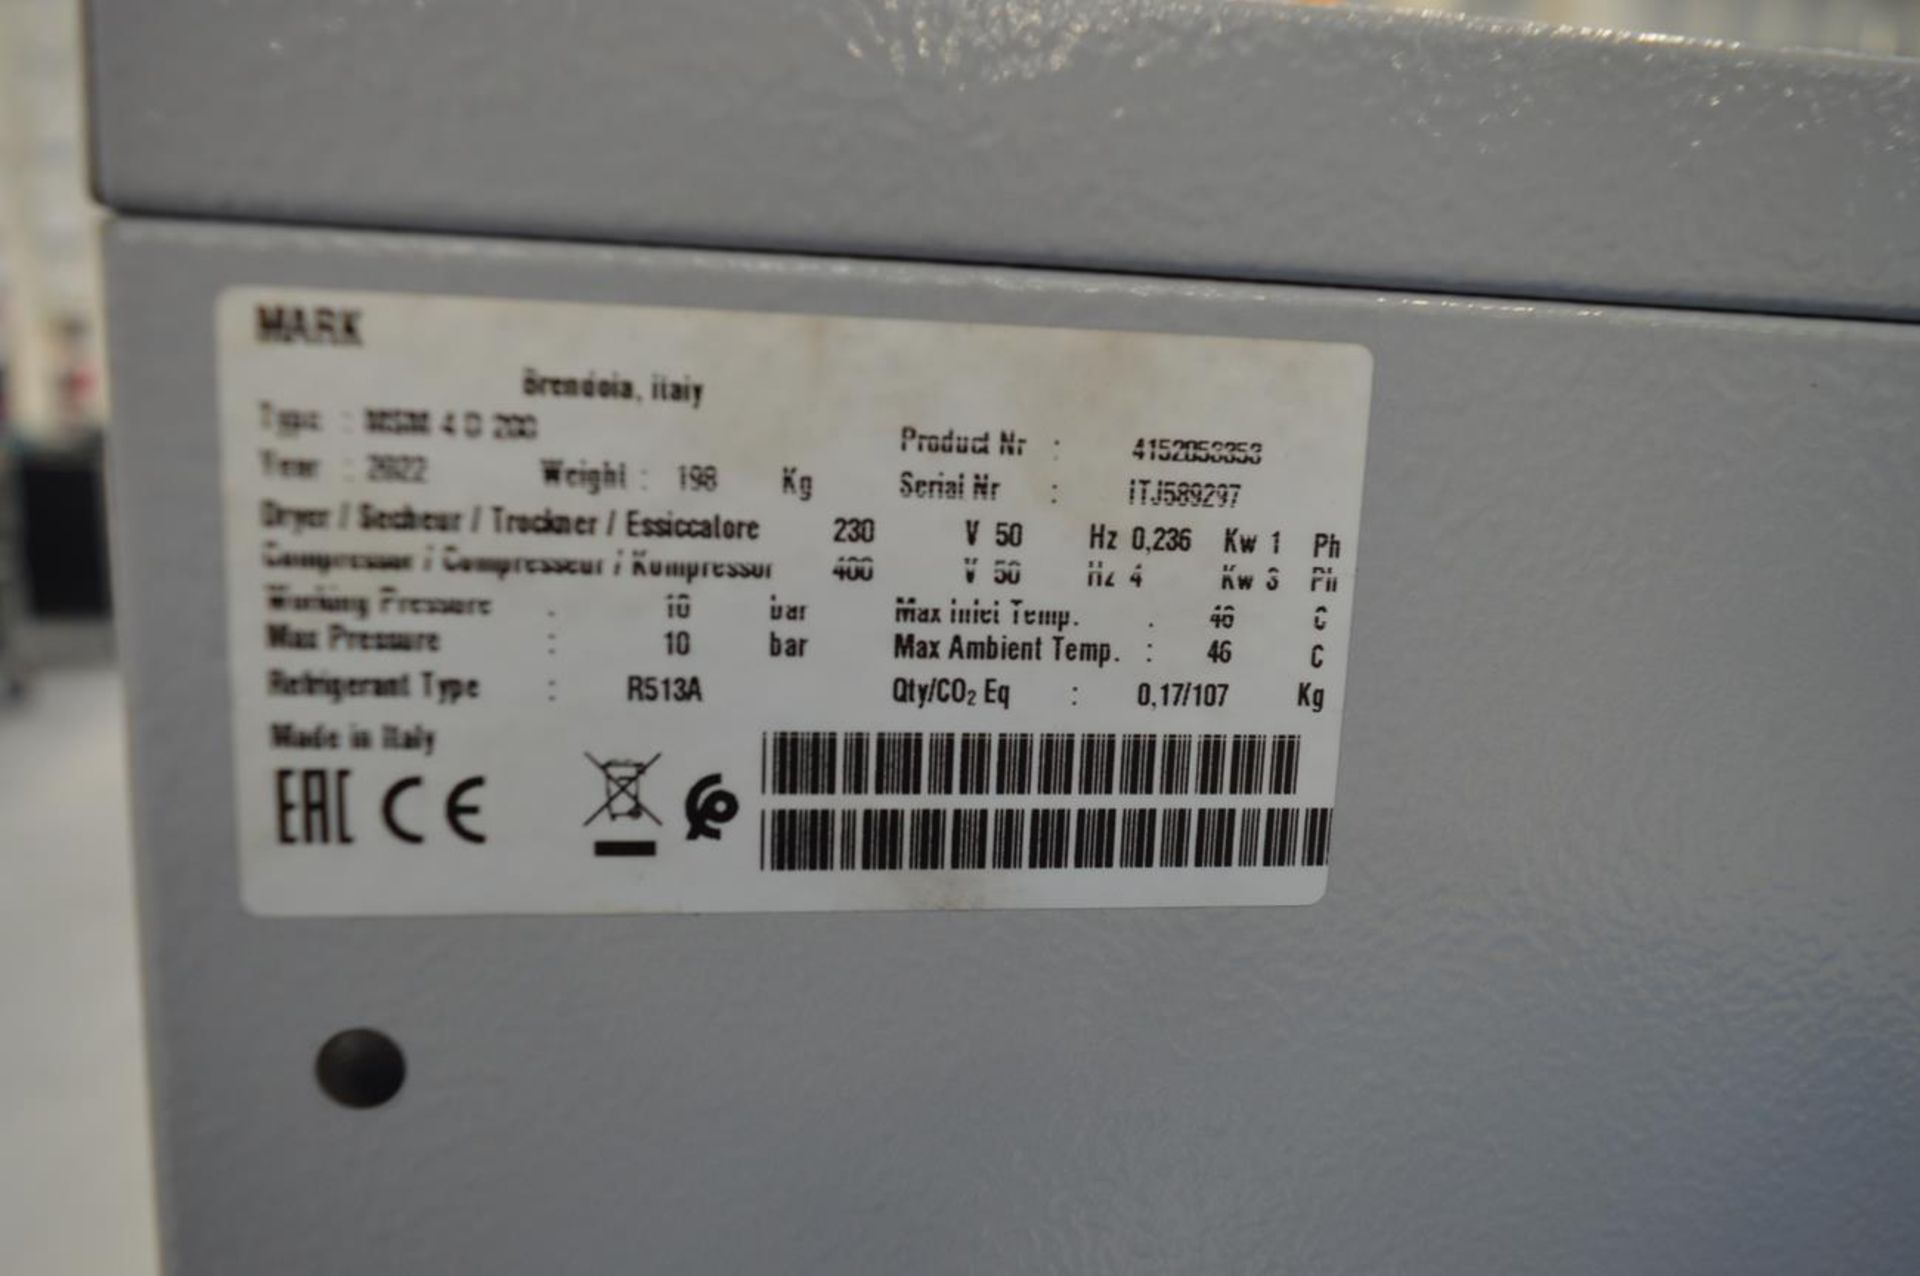 Mark, MSM4.D200 compressor, Serial No. ITJ589297 (DOM: 2022) - Bild 5 aus 5